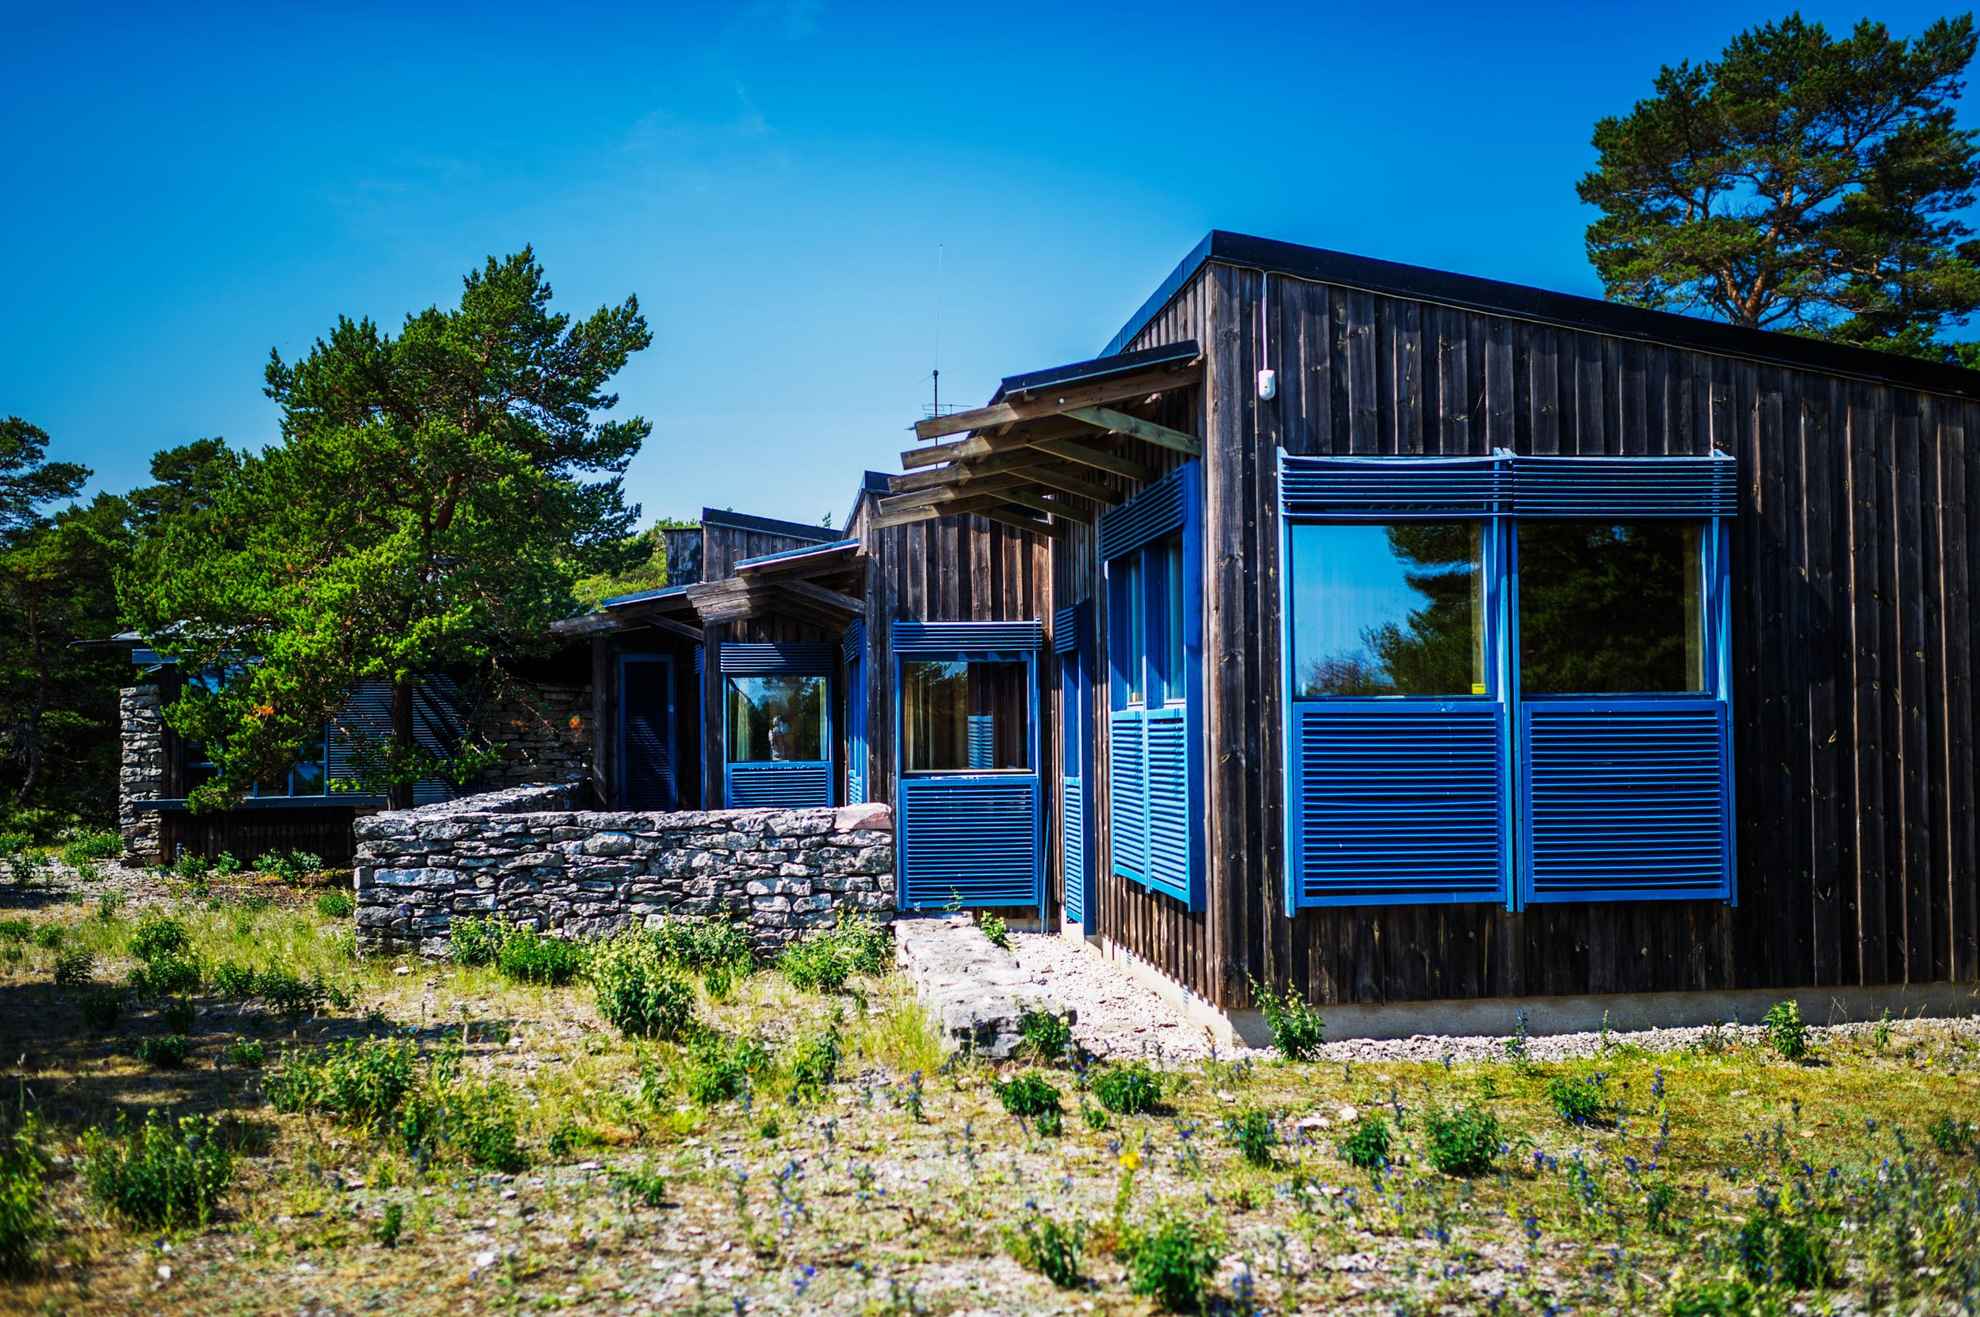 Ingmar Bergmans Haus, ein einstöckiges Gebäude mit vielen Fenstern und blauen Fensterläden. Es sitzt in einer ländlichen Umgebung.